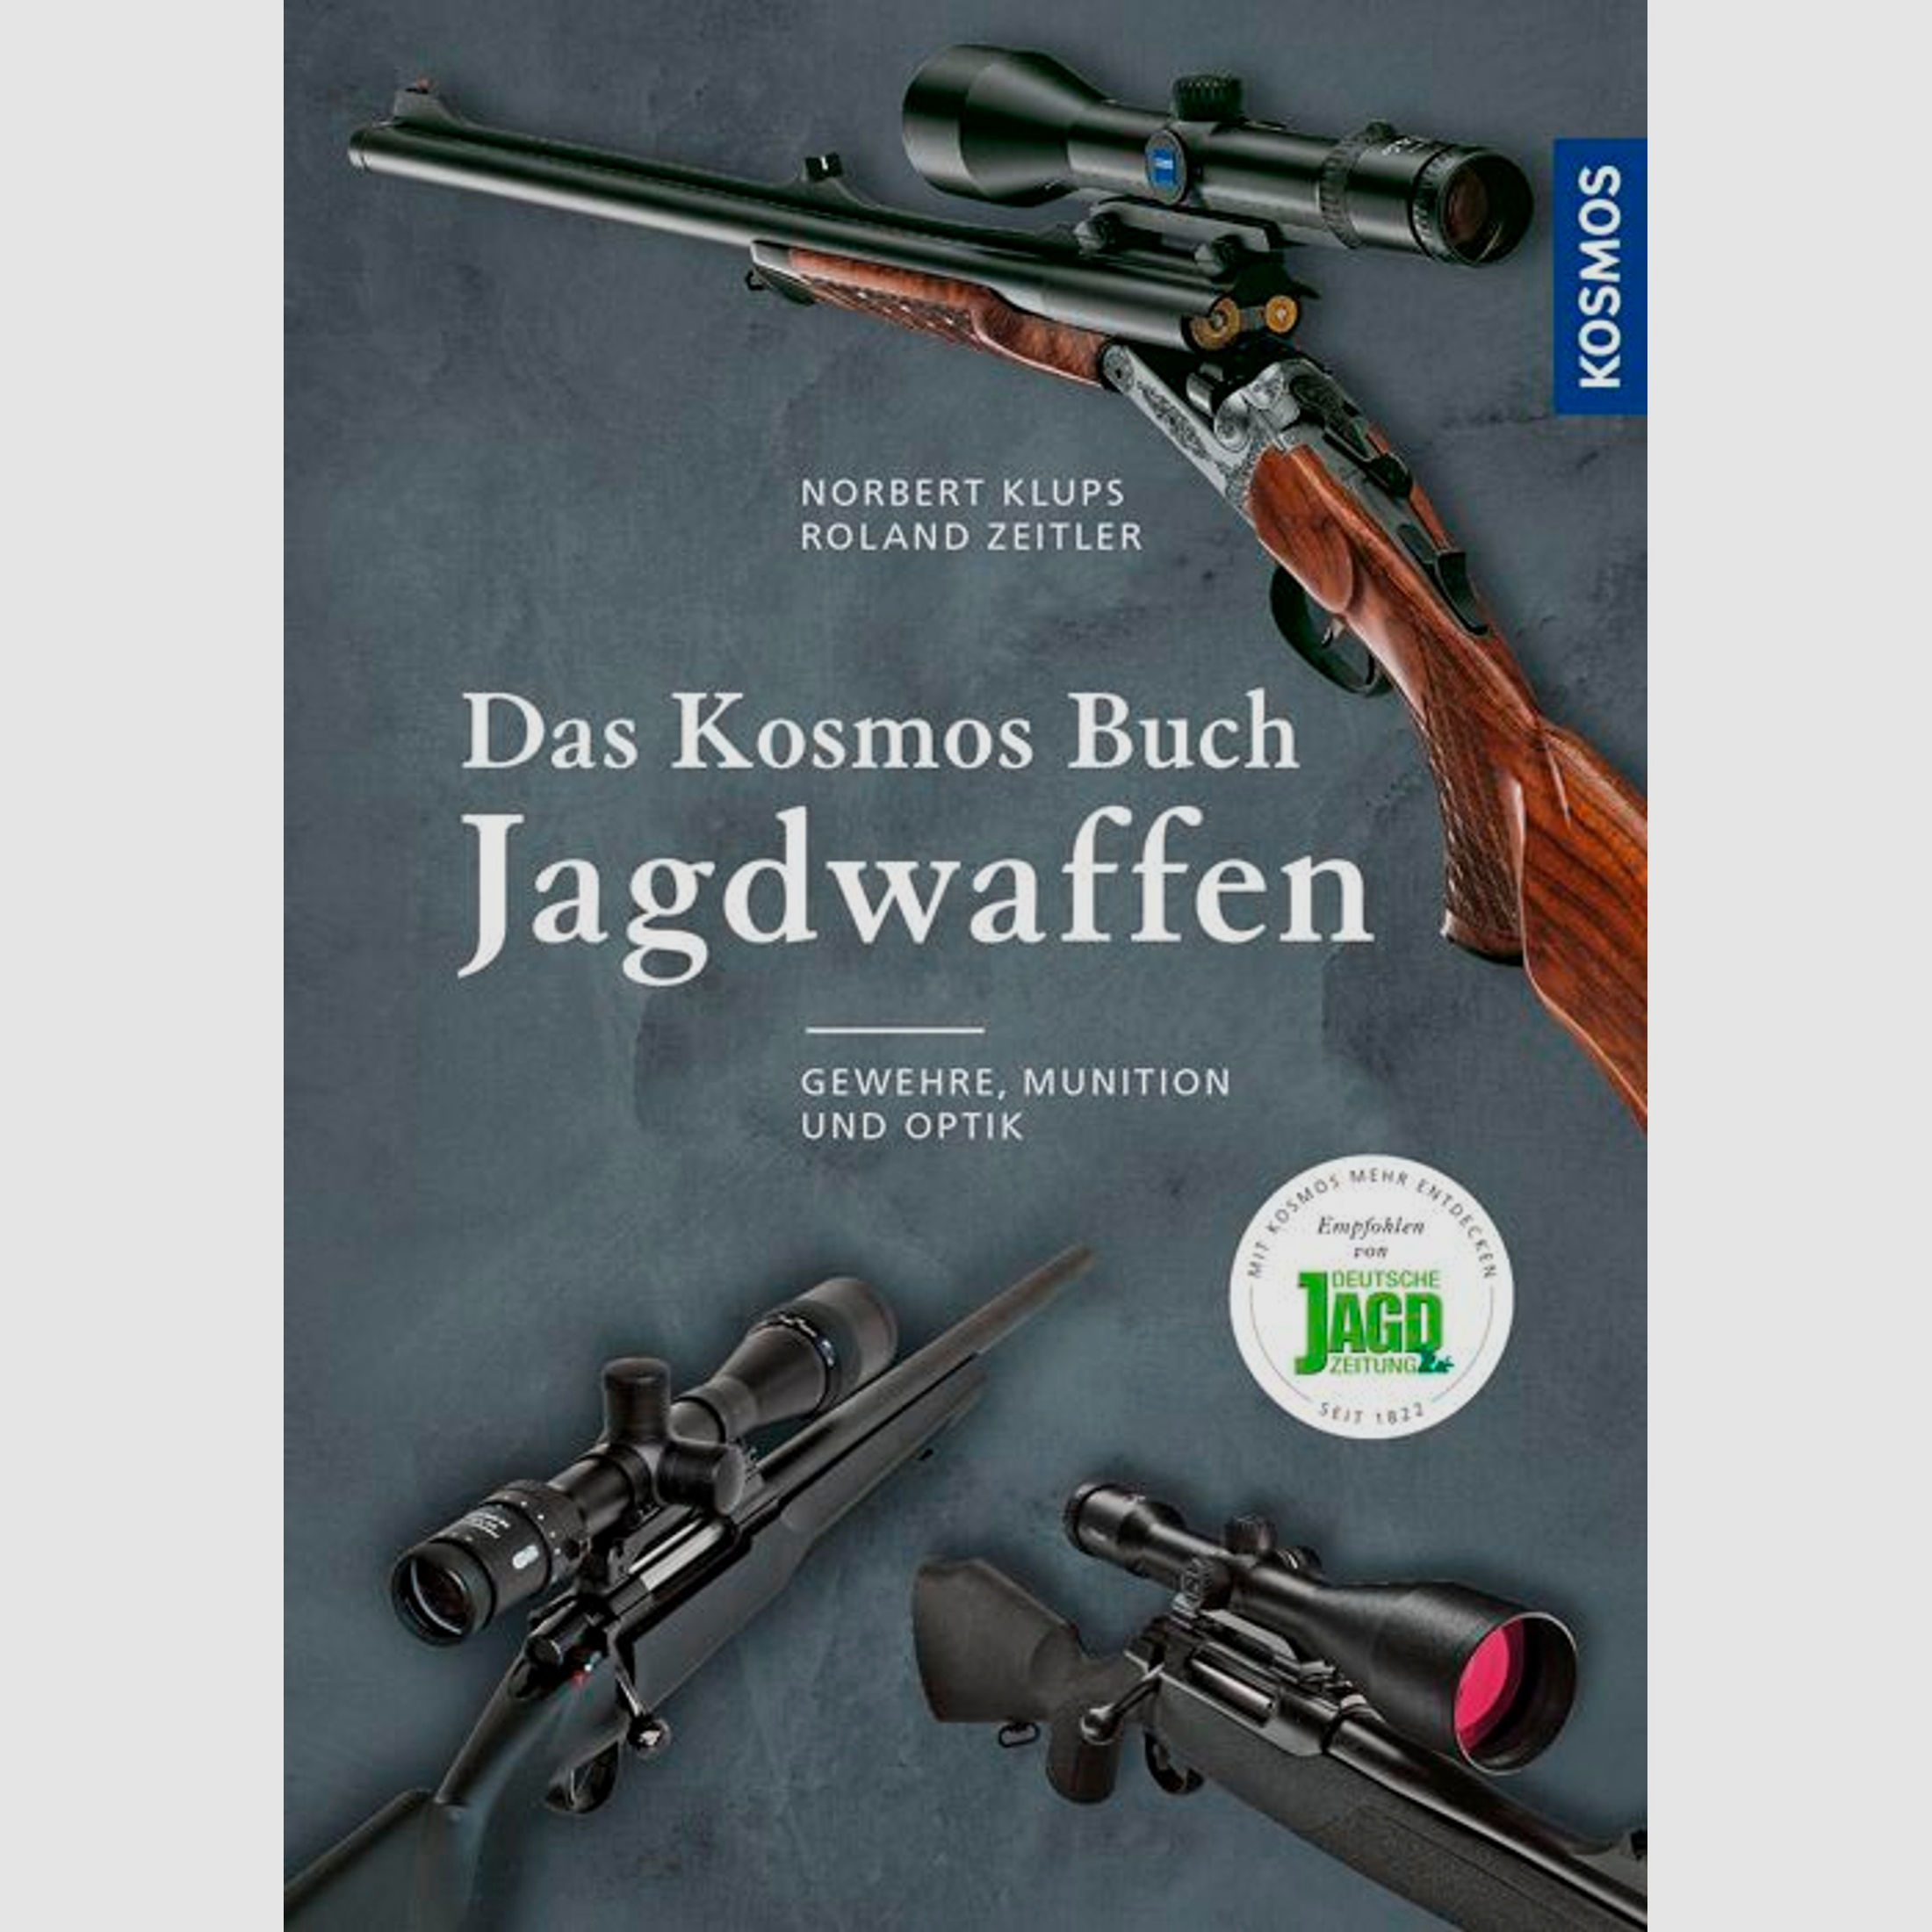 Das Kosmos Buch: Jagdwaffen - Klups & Zeitler